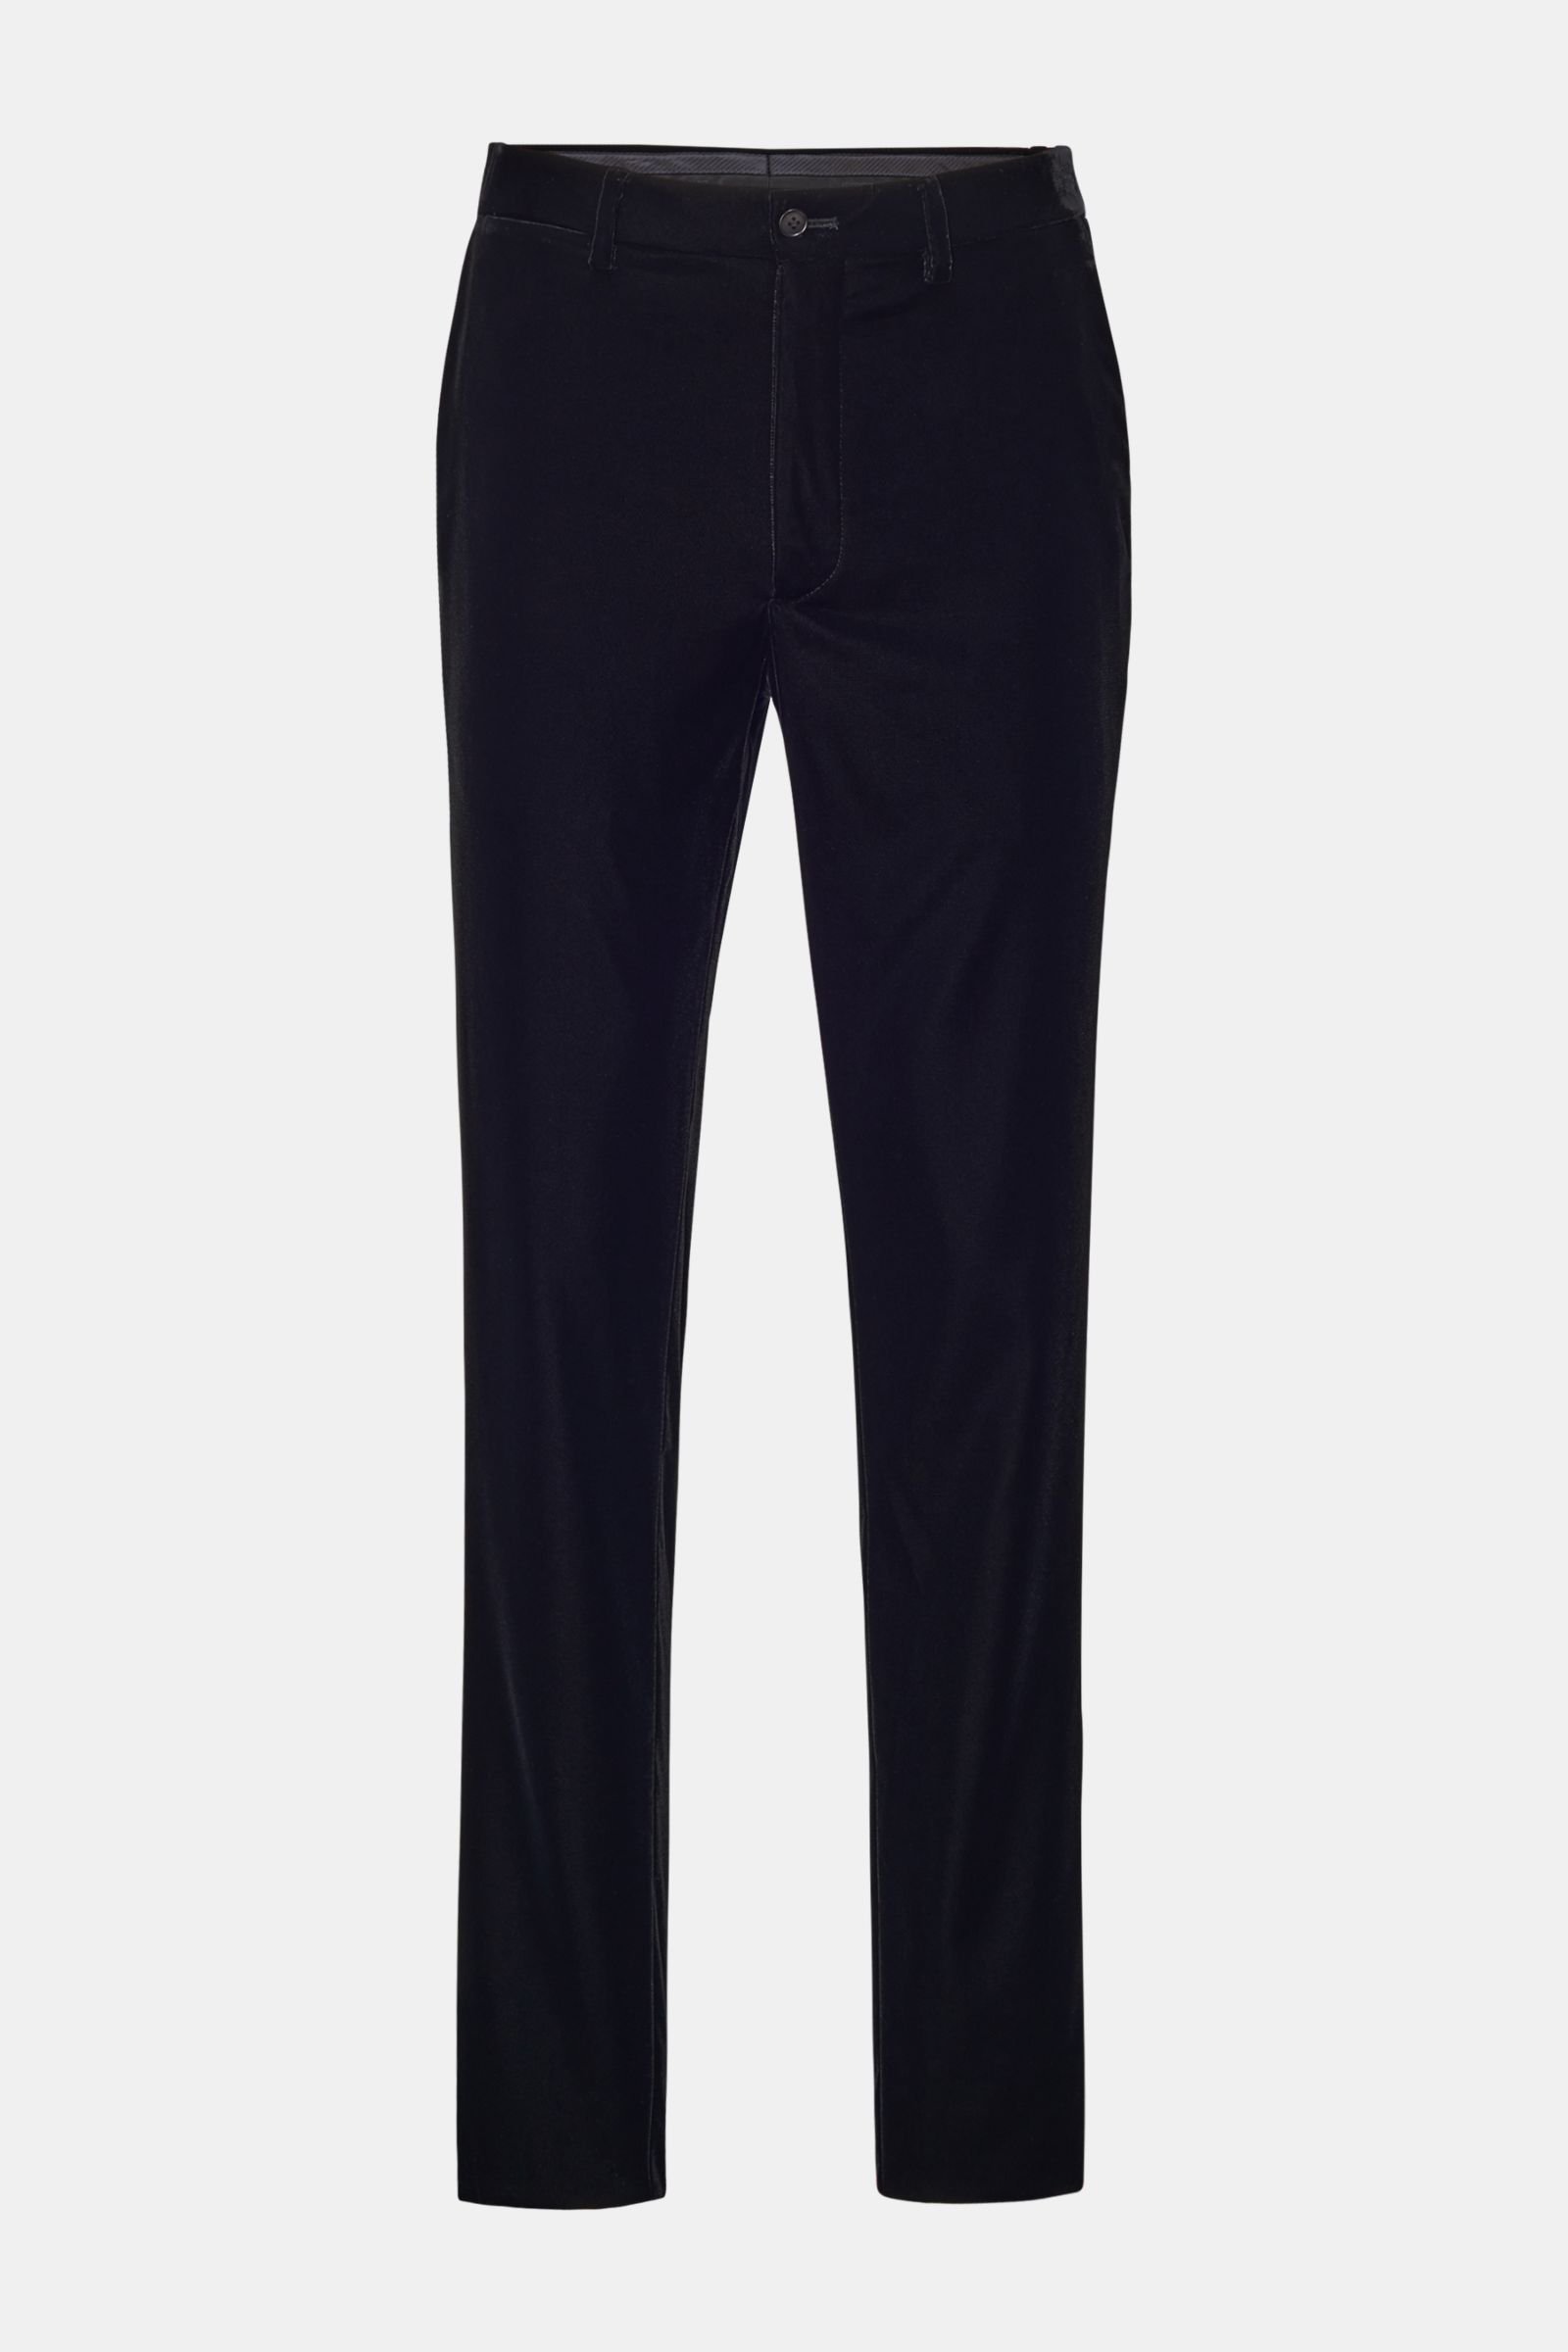 Shop Emporio Armani Tuxedo Trousers | Saks Fifth Avenue-demhanvico.com.vn